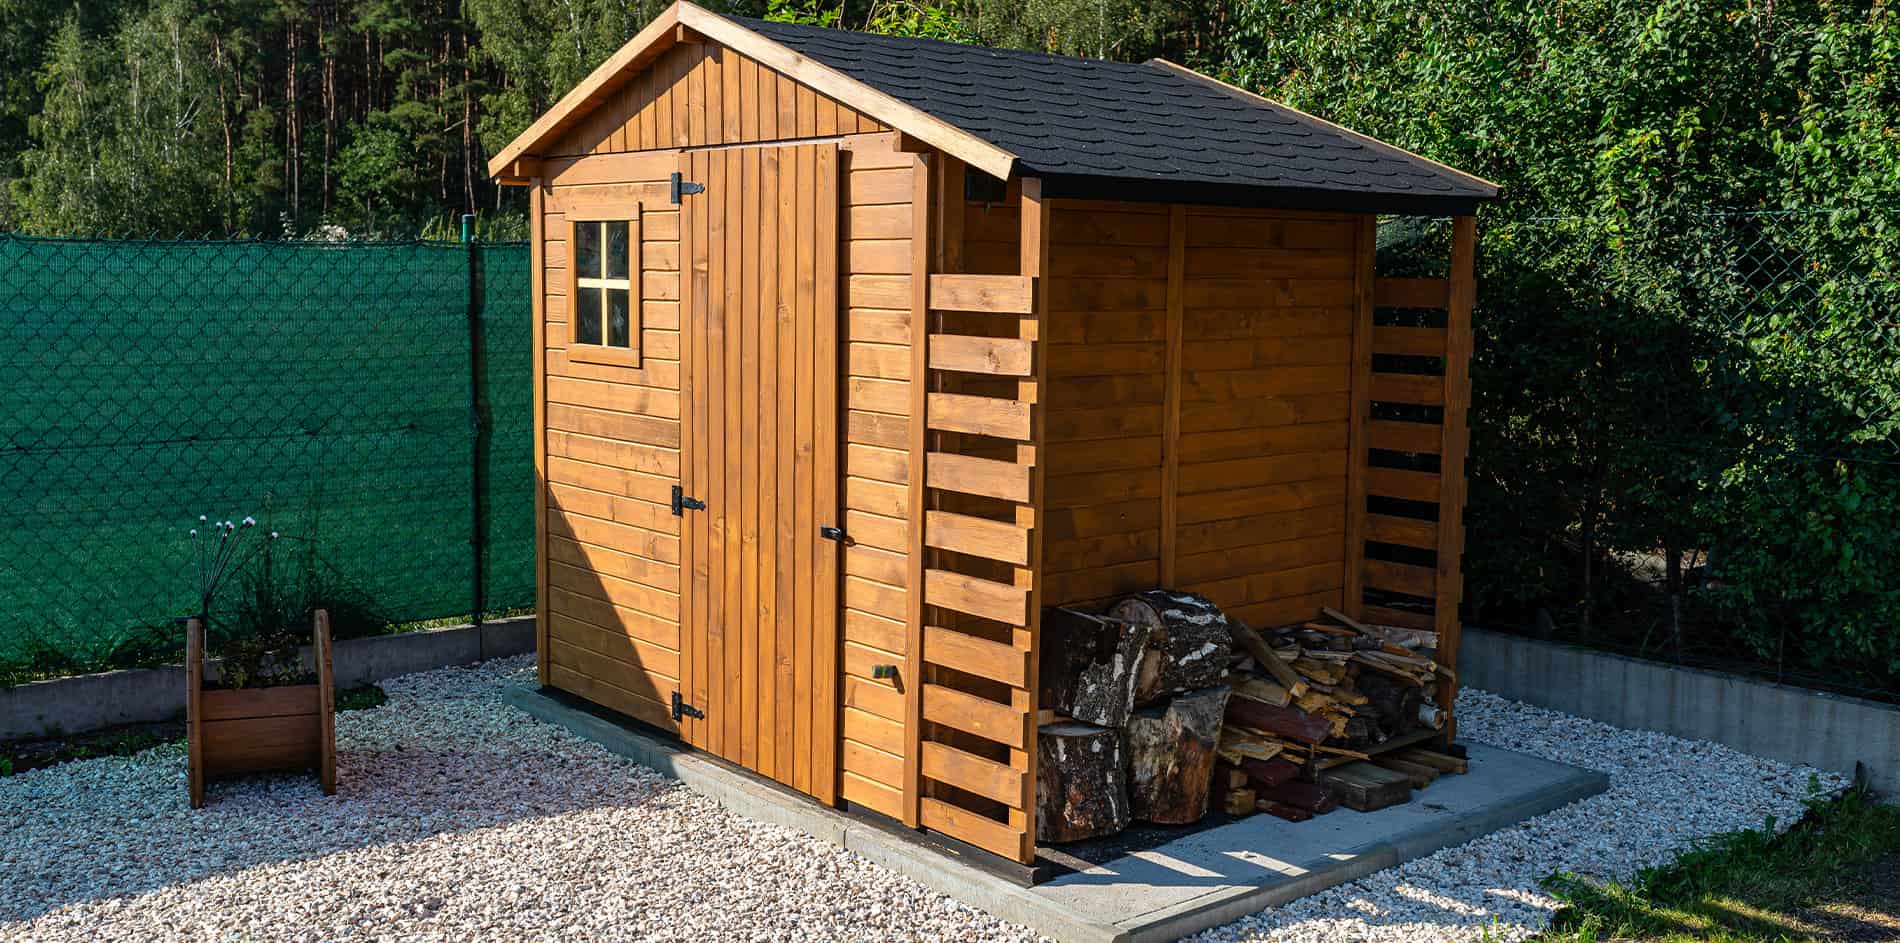 Ein frisch montiertes Gartenhaus von BR Montage, umgeben von grünem Rasen, praktisch für die Aufbewahrung von Werkzeugen und Gartenbedarf